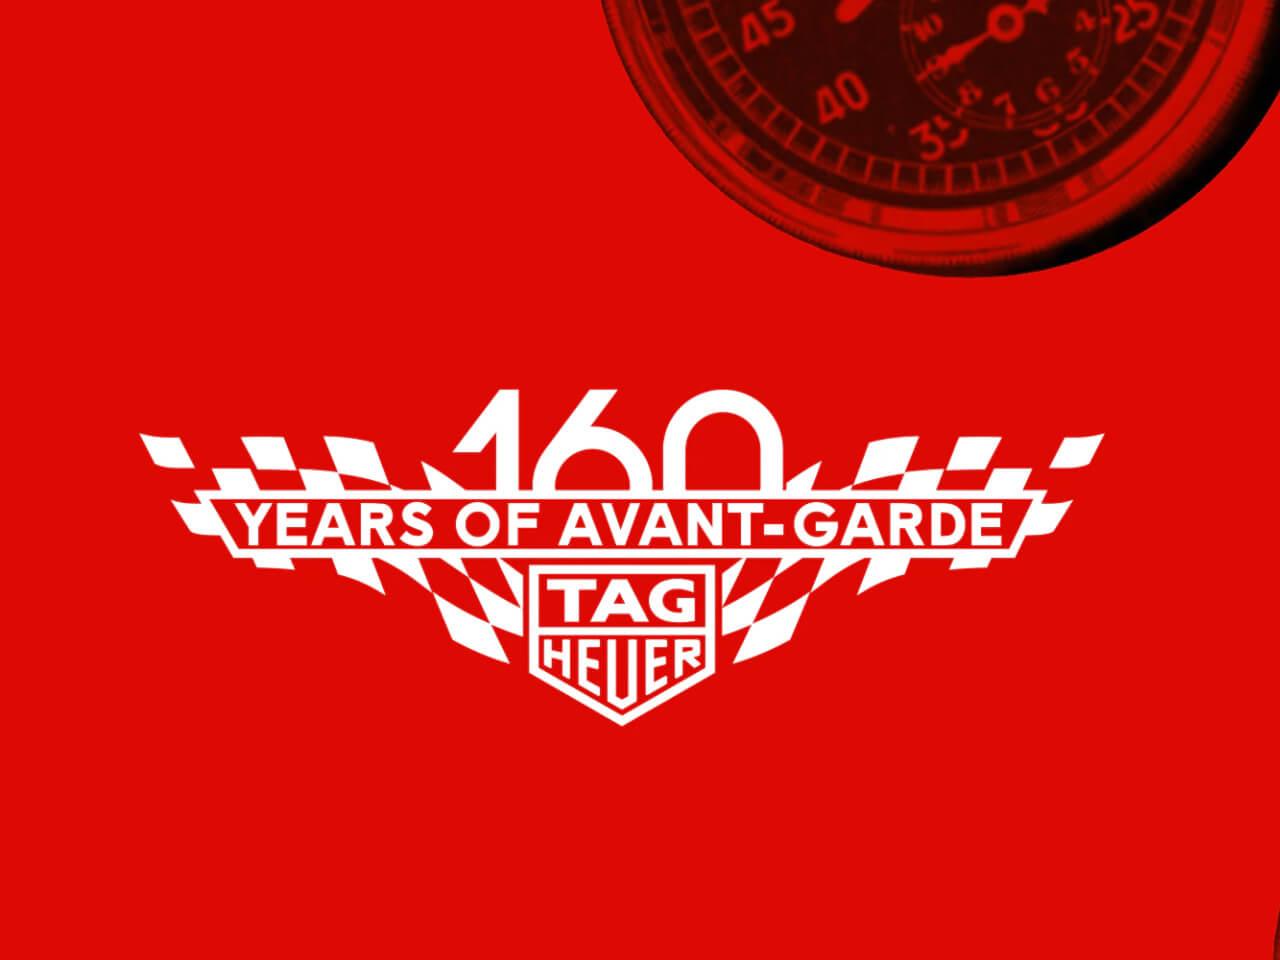 タグホイヤーはブランドロゴに赤を使っており、歴史的なデザインの基本色である